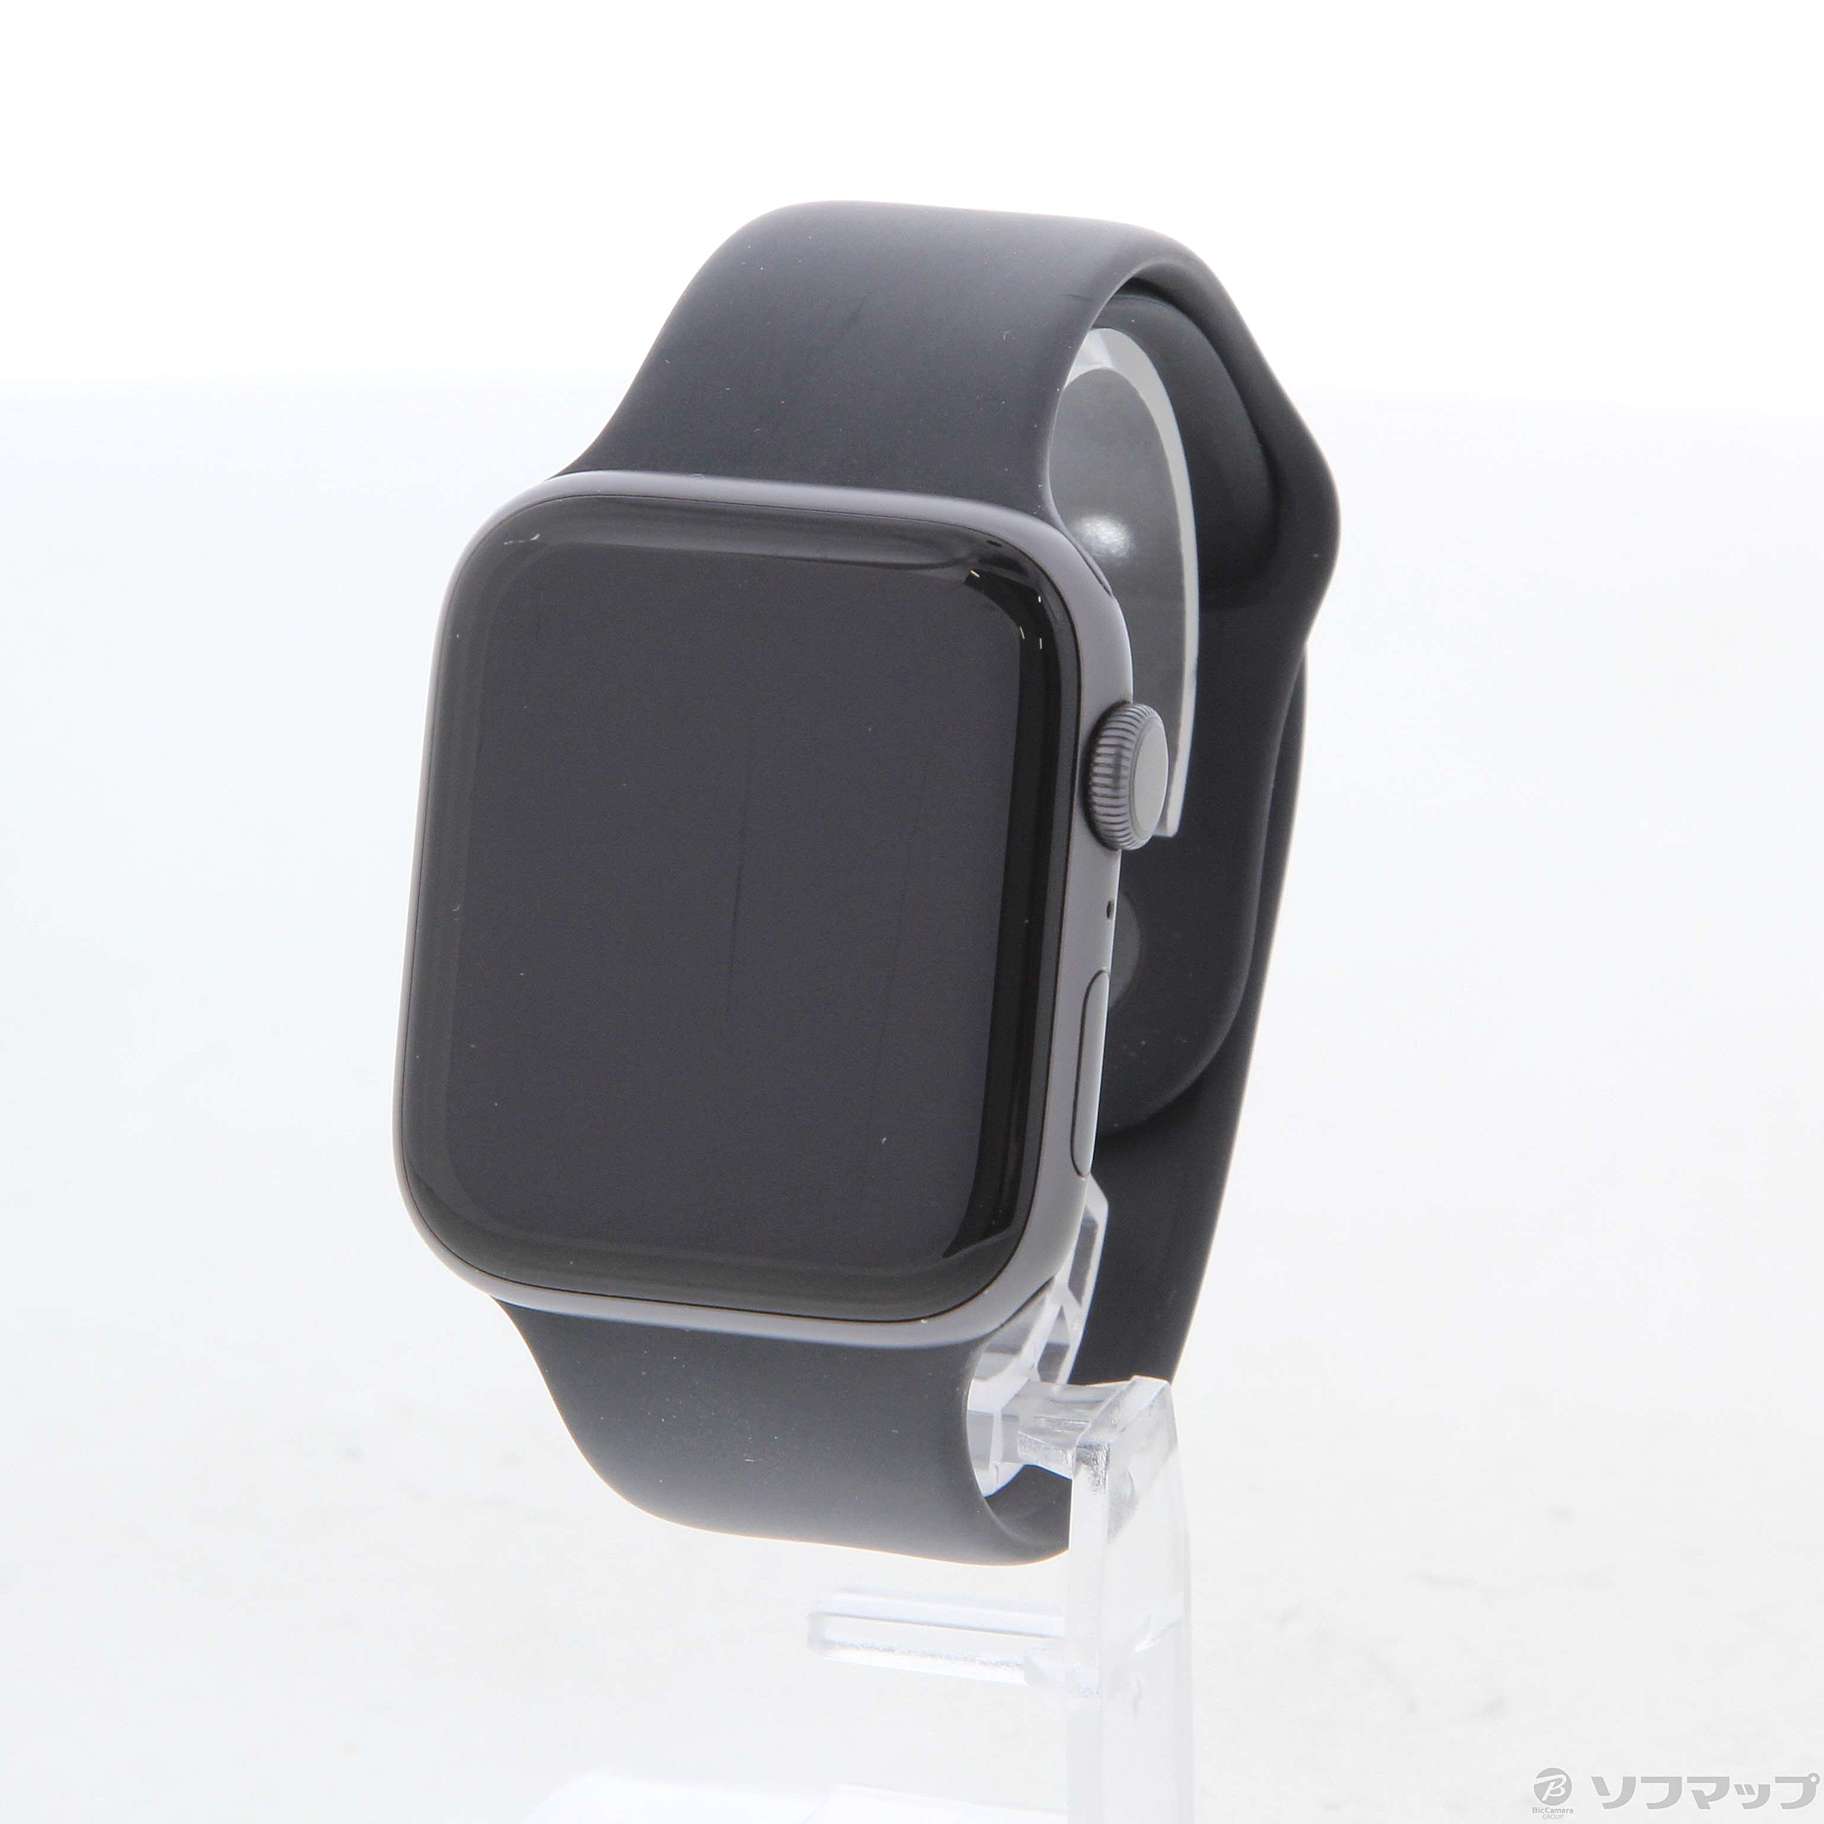 〔中古品〕 〔中古品〕 Apple Watch Series 4 GPS 44mm スペースグレイアルミニウムケース ブラックスポーツバンド